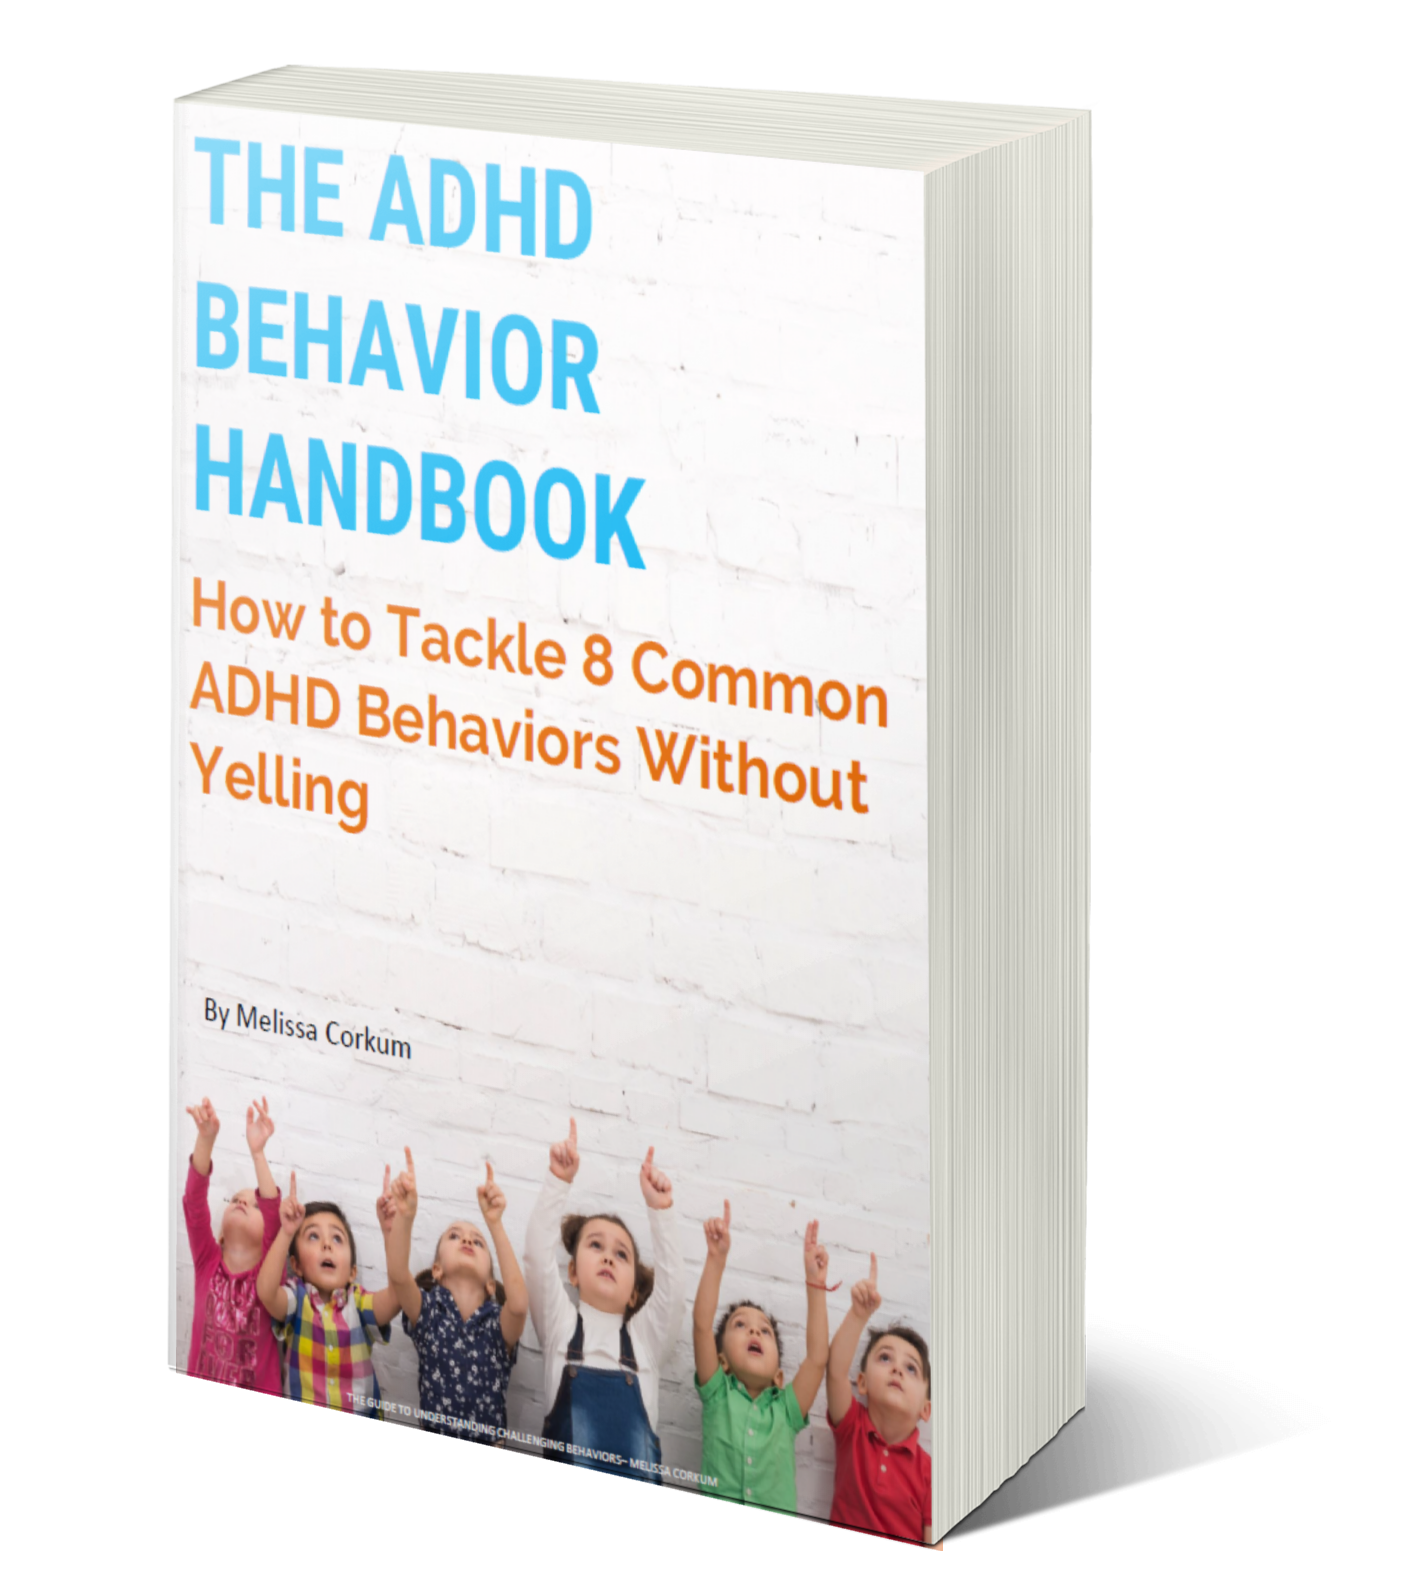 The Guide to Understanding Challenging Behaviors